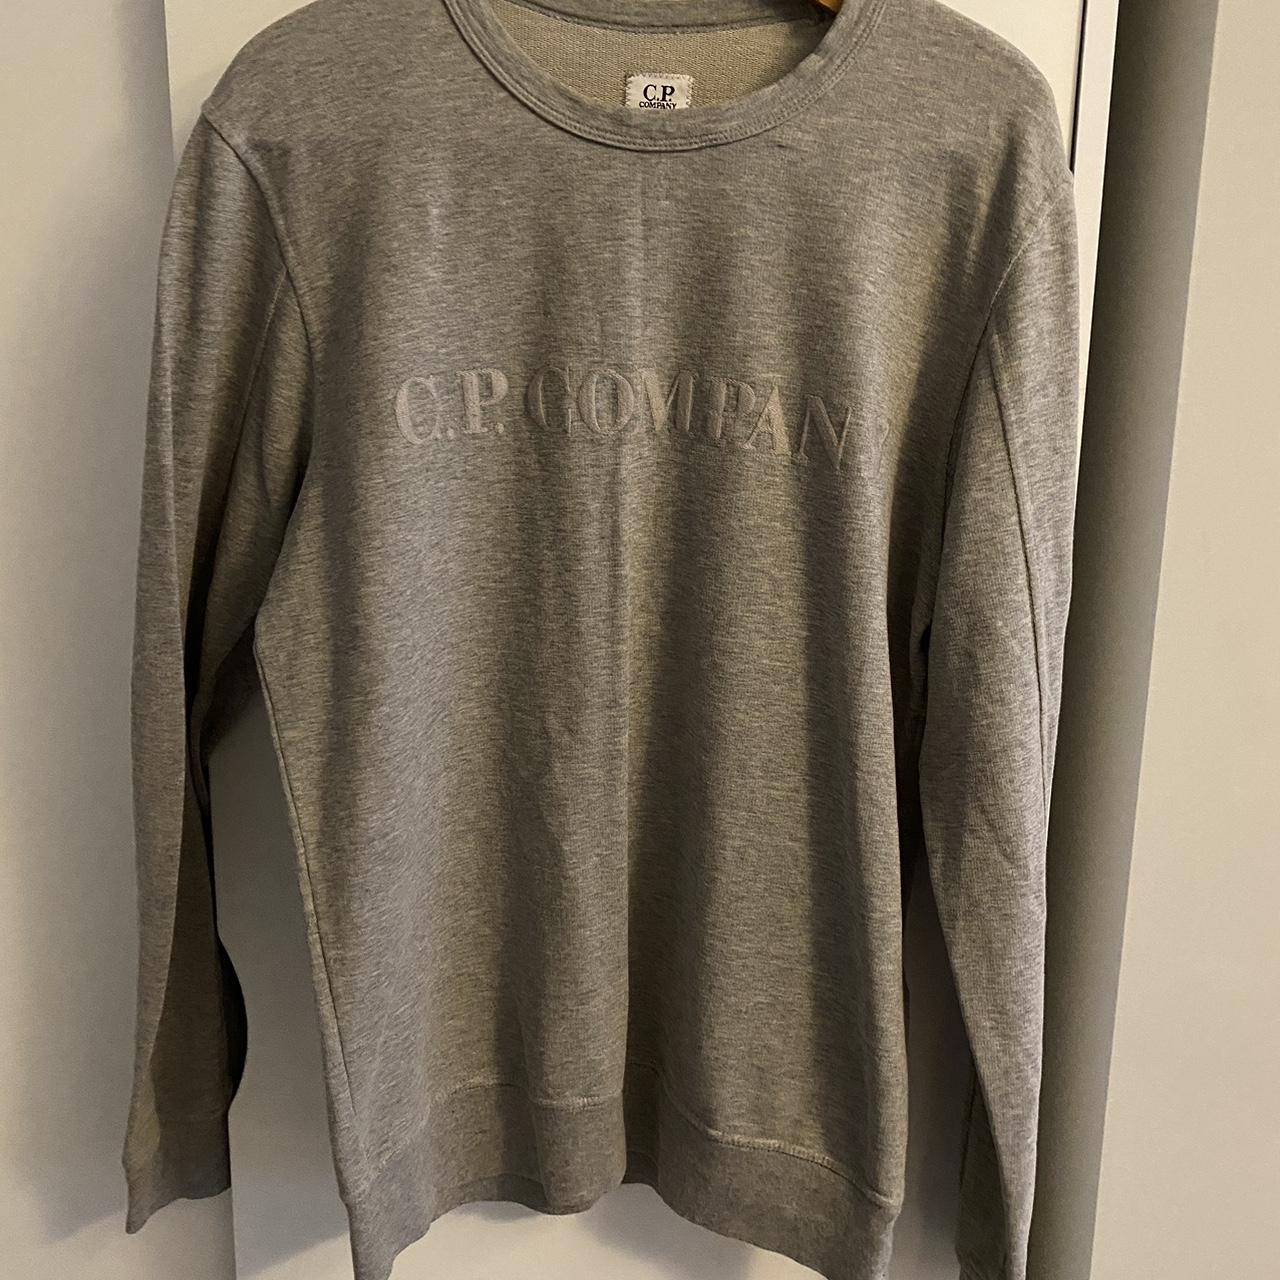 Cp company grey sweatshirt 9/10 condition Worn... - Depop